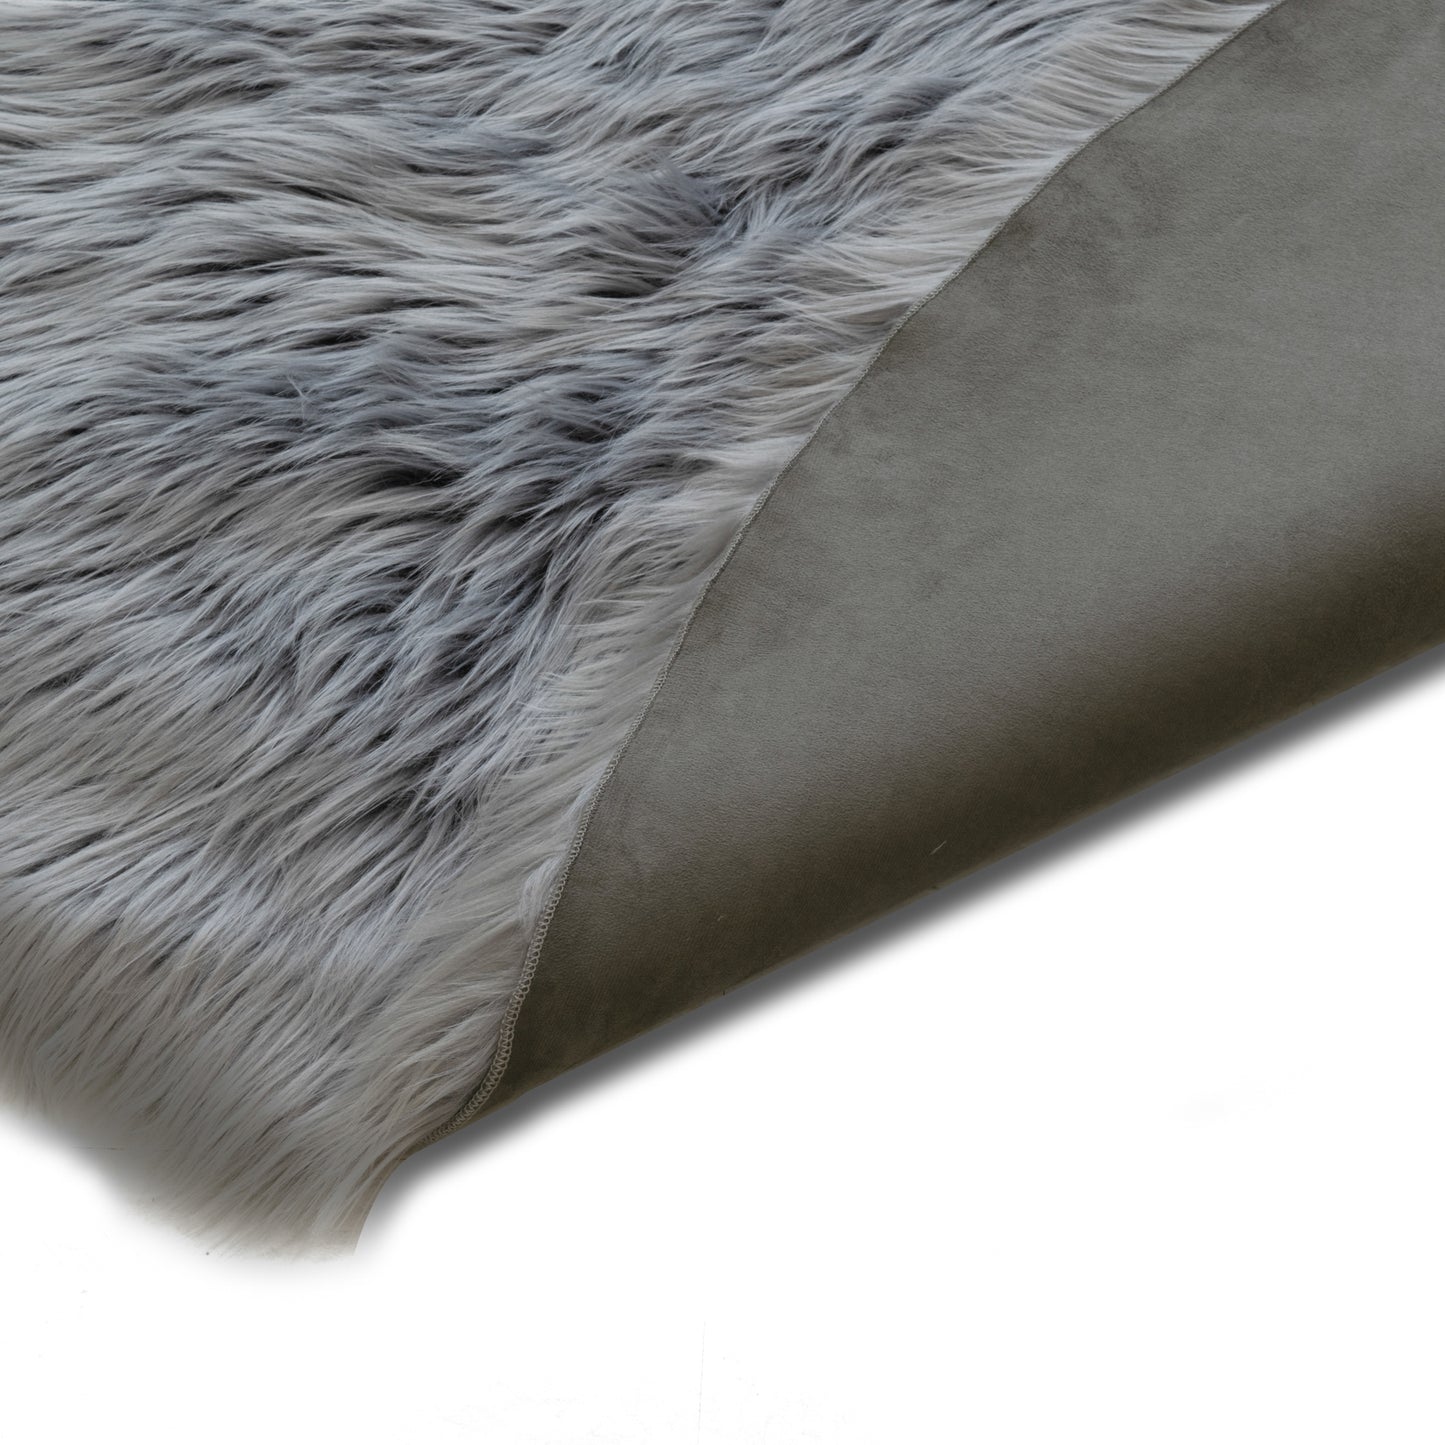 Ailsa Faux Sheepskin Fur Area Rug Runner Sheepskin-like Shape Grey 8x5